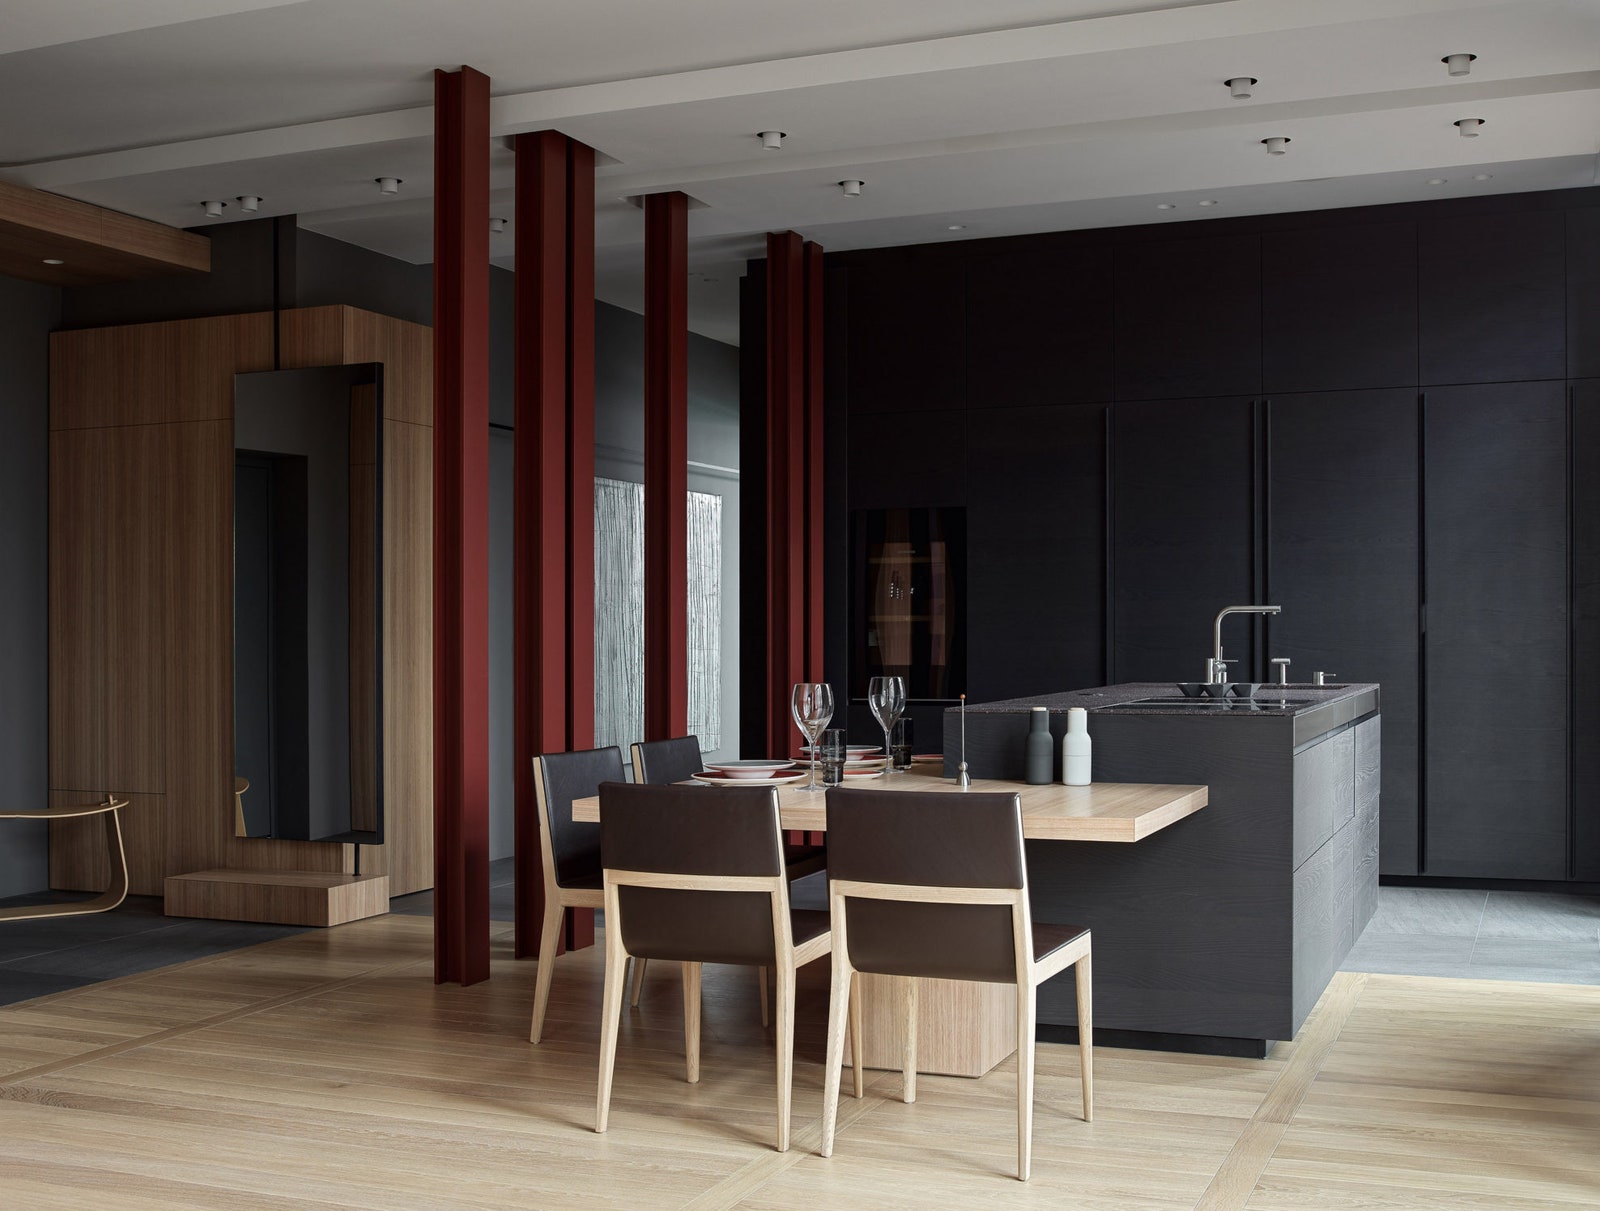 Квартира по проекту NIDO Interiors. Общий план кухни и прихожей. Разделяющие их колонны сделаны на заказ. Зеркало...